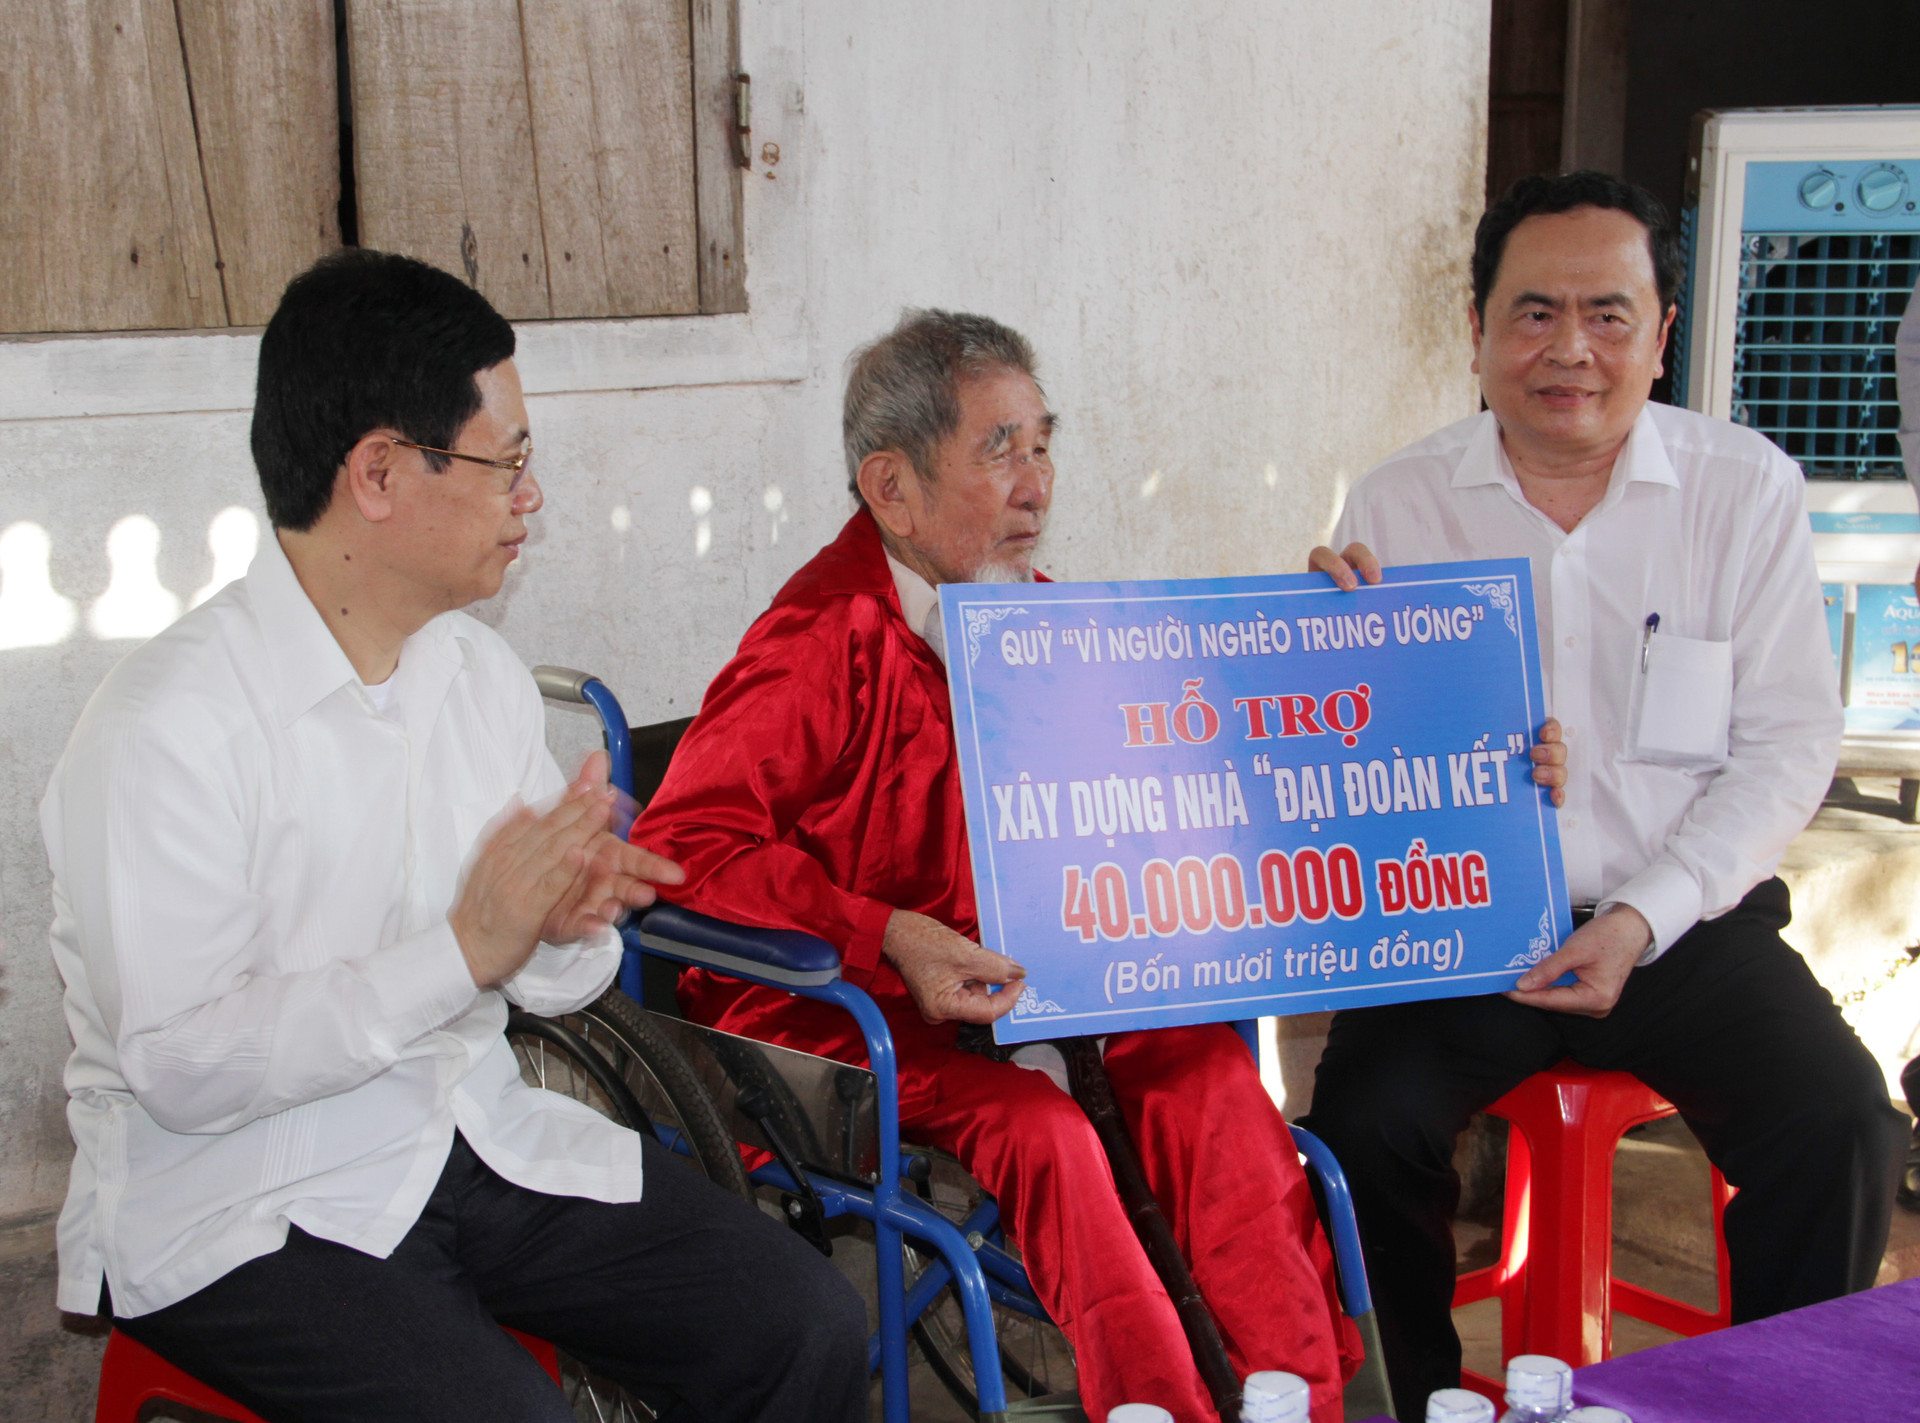 1.Chủ tịch Trần Thanh Mẫn trao nhà Đại Đoàn kết cho ông Bùi Tiến Khoan, trú tại xóm 2, xã Mỹ Sơn, huyện Đô Lương.